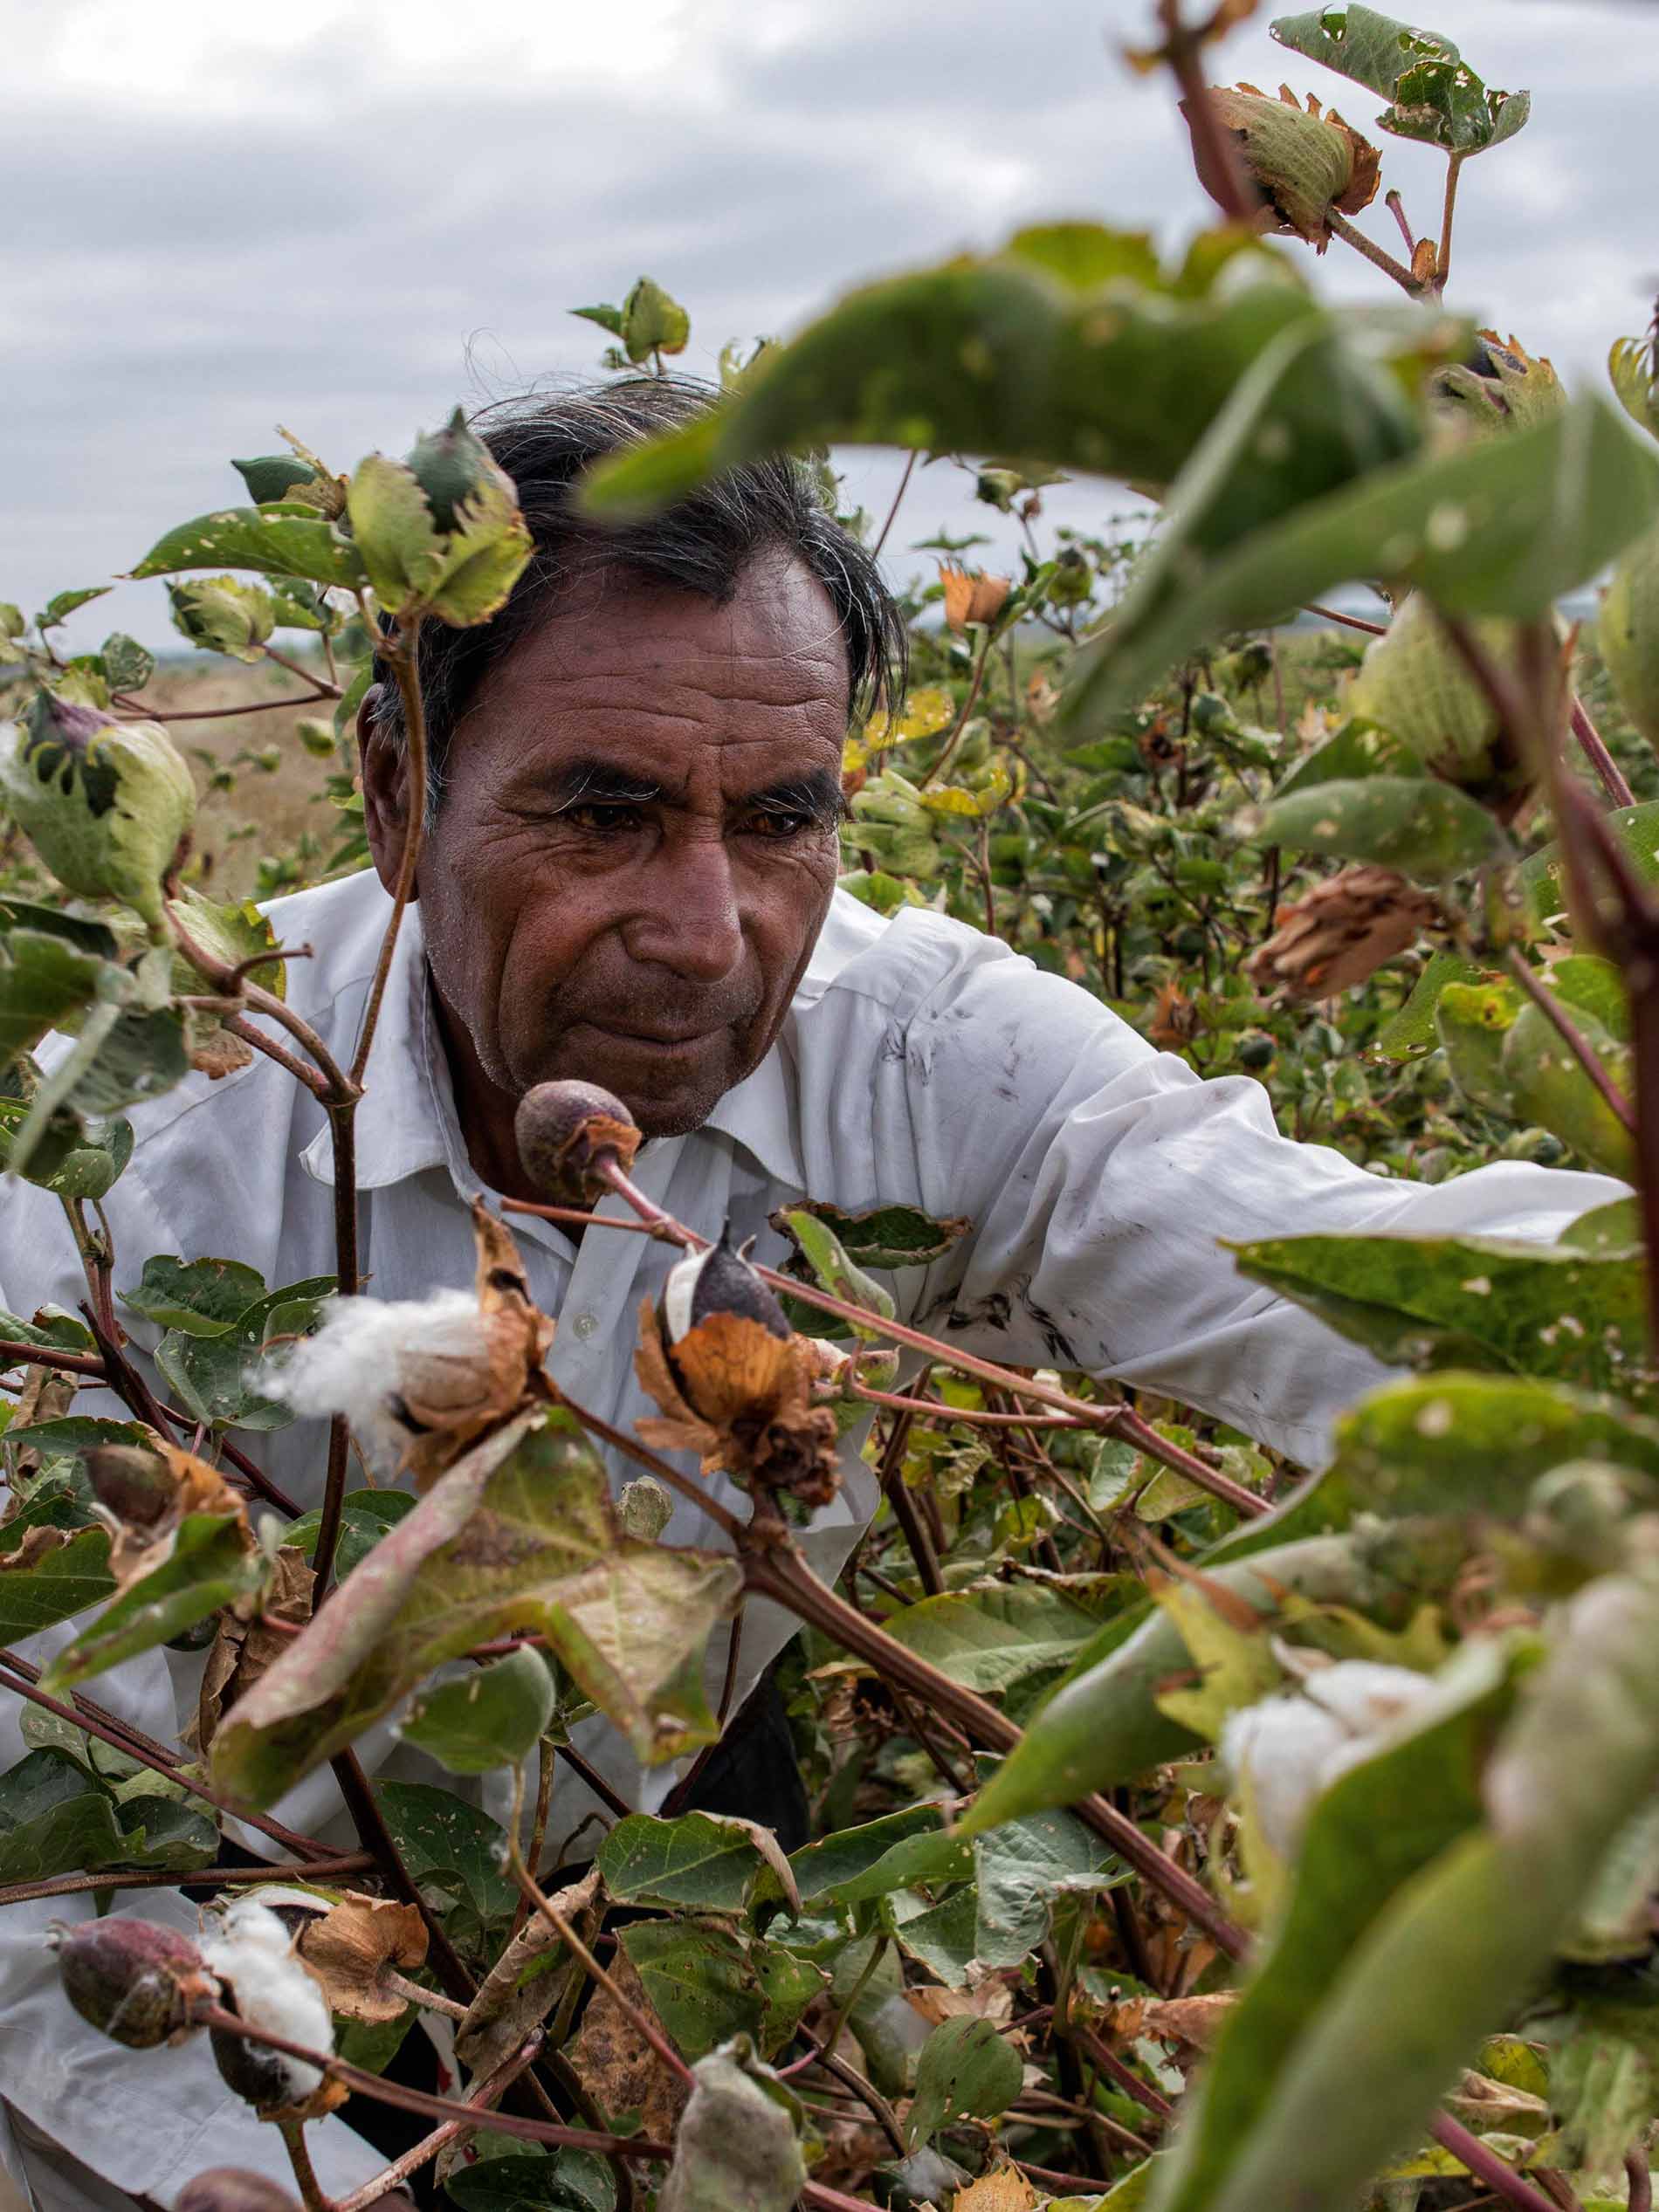 Baumwollpflücker in Peru erntet die reifen Baumwollblüten | mey®